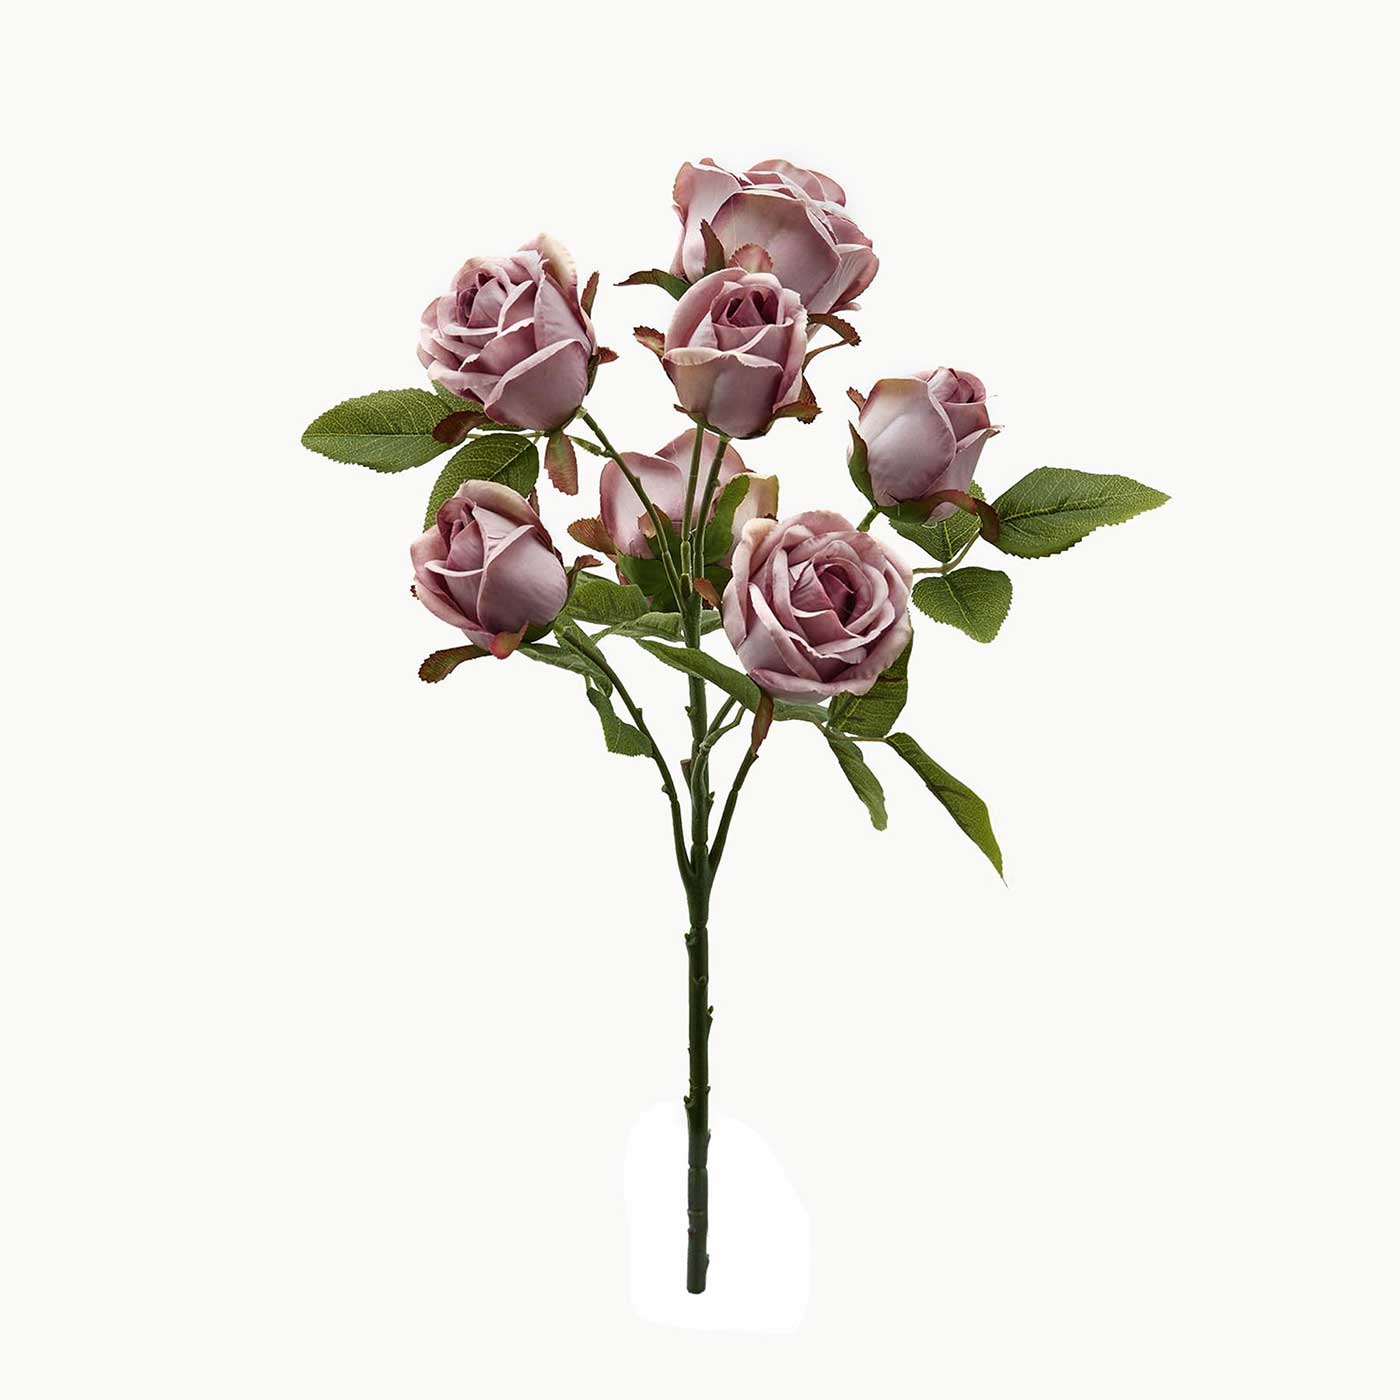 Bouquet 7 Rose Artificiali in Seta Stile Shabby Chic Colore Malva